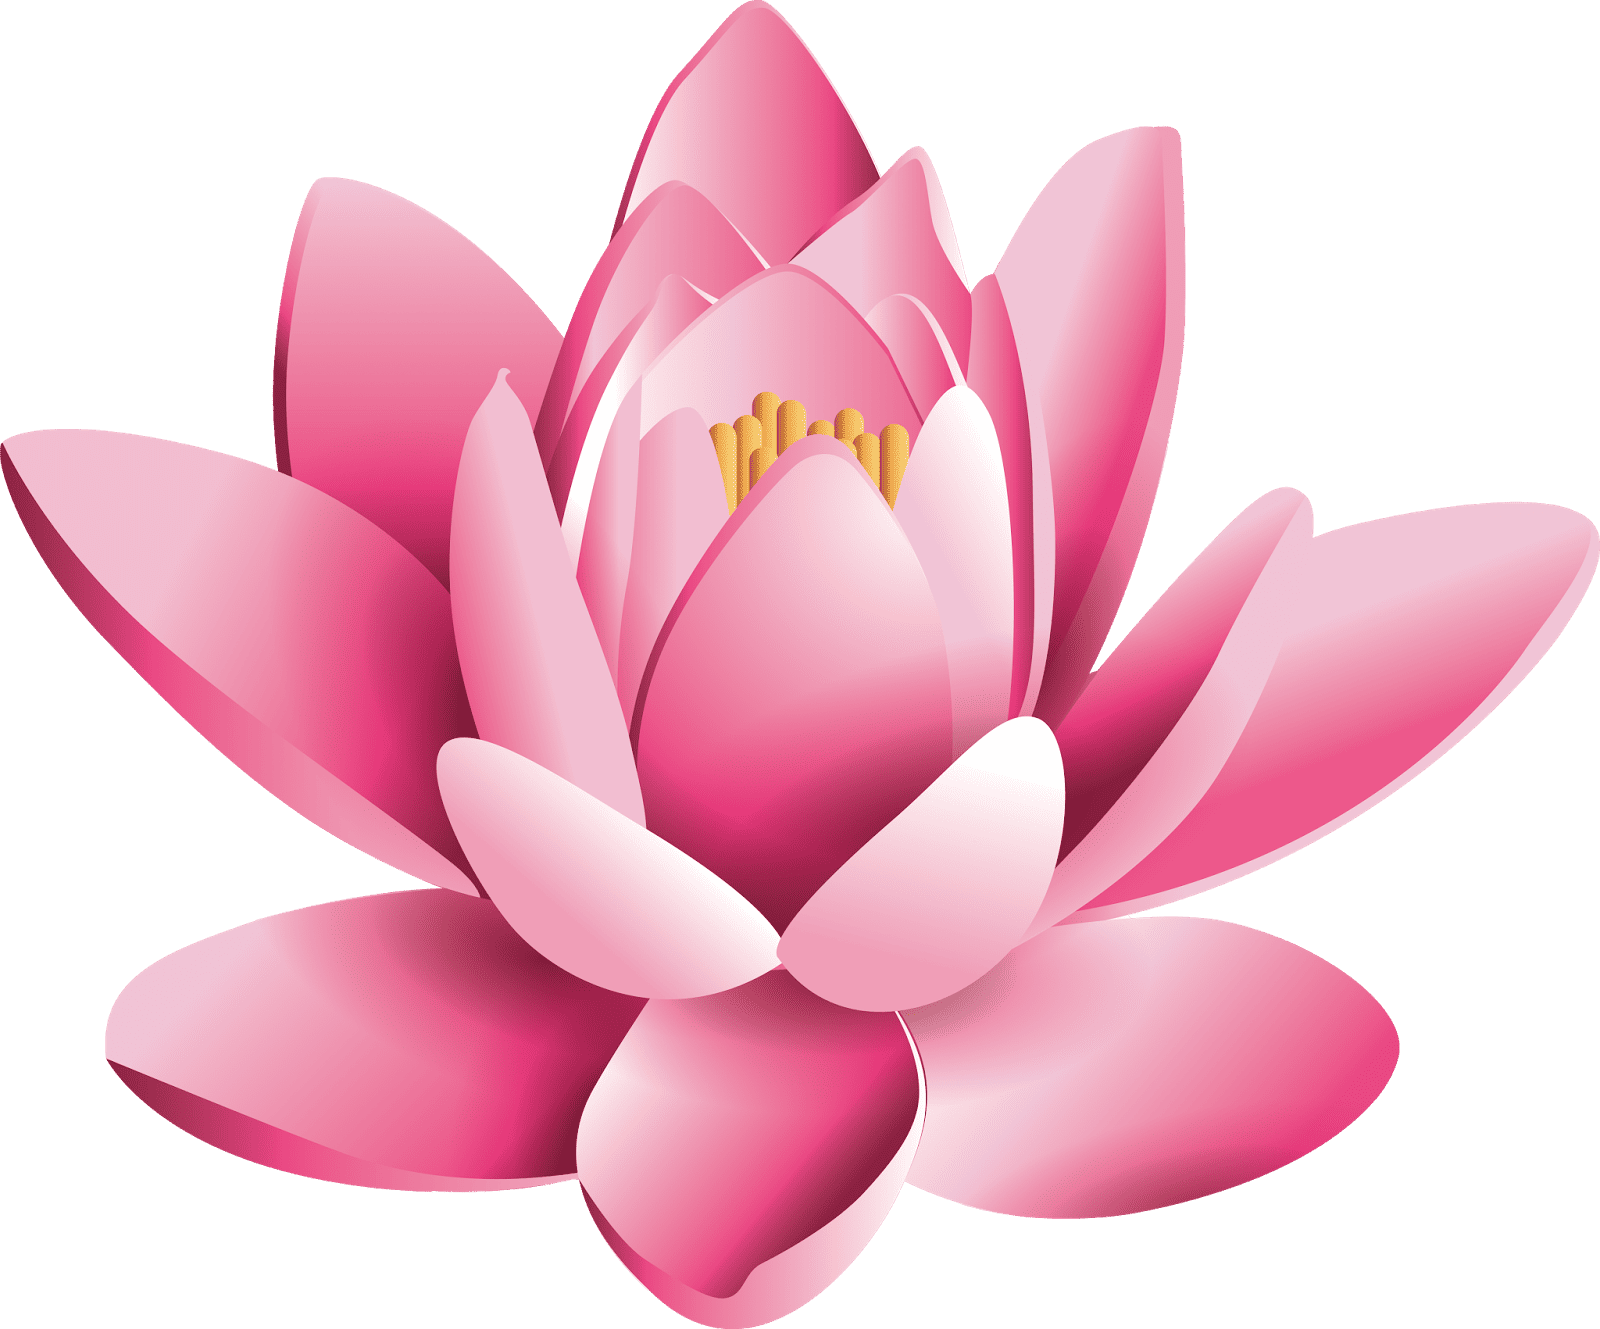 164179-pink-lotus-flower-pic-free-photo (1)